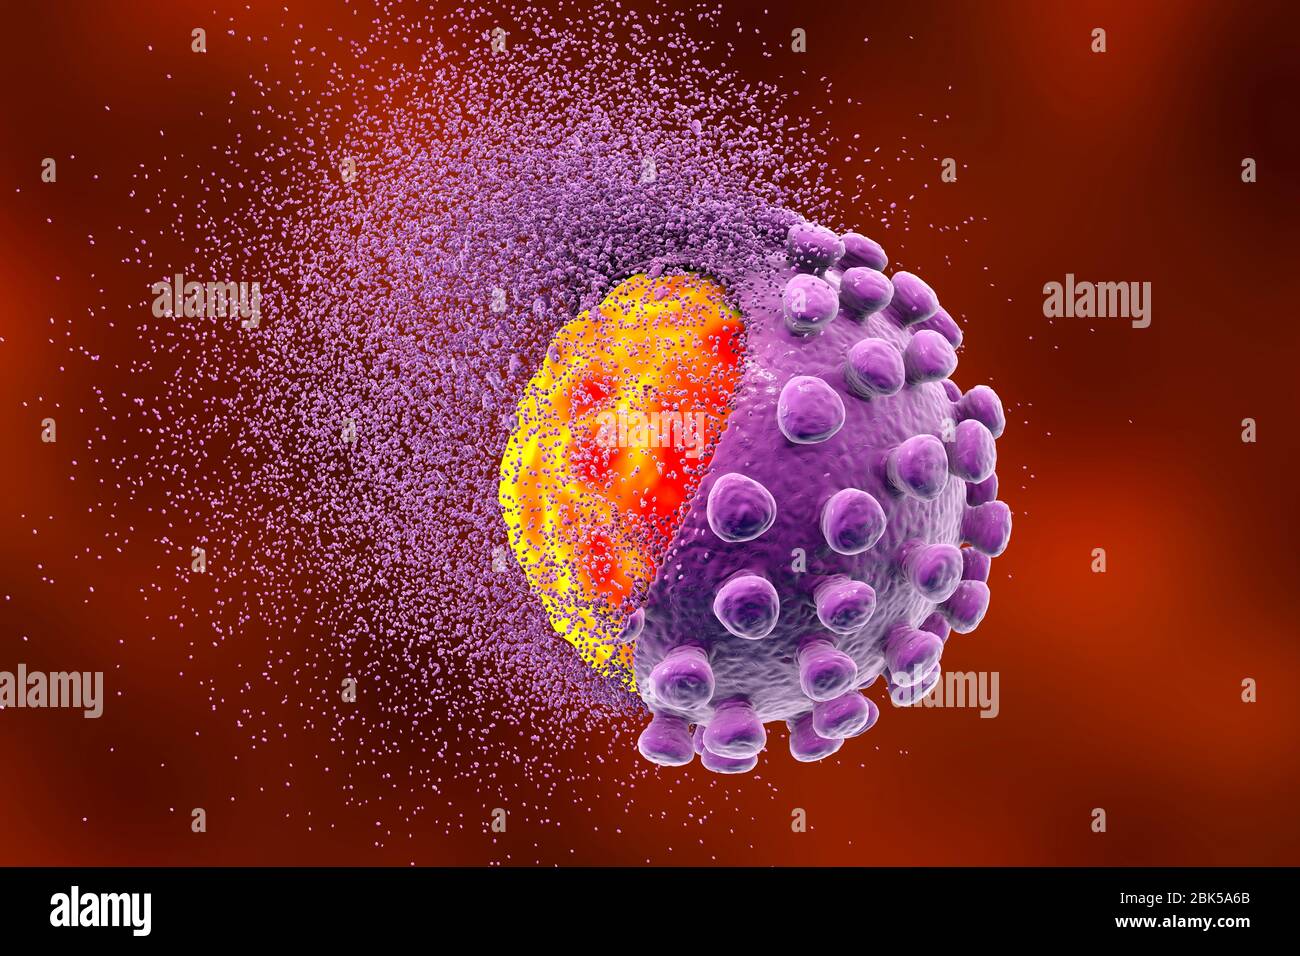 Erradicando el coronavirus covid-19, ilustración conceptual. El nuevo coronavirus SARS-CoV-2 (anteriormente 2019-CoV) surgió en Wuhan, China, en diciembre de 2019. El virus causa una enfermedad respiratoria leve (Covid-19) que puede convertirse en neumonía y ser mortal en algunos casos. Los coronavirus toman su nombre de su corona (corona) de proteínas de punta superficial (grandes protuberancias), que se utilizan para unir y penetrar sus células huésped. Foto de stock